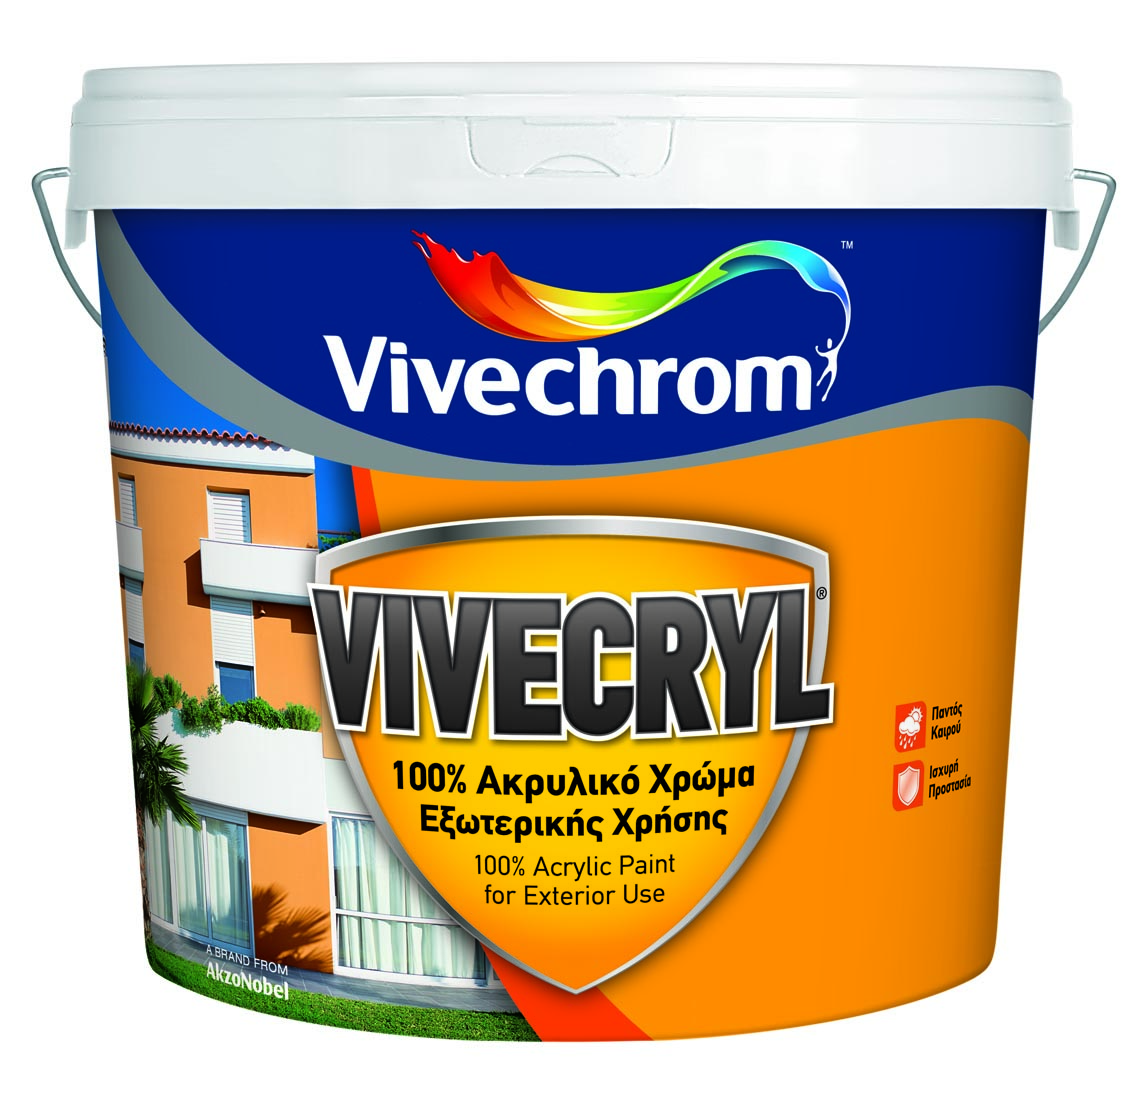 VIVECHROM WHITE VIVECRYL 30 3L